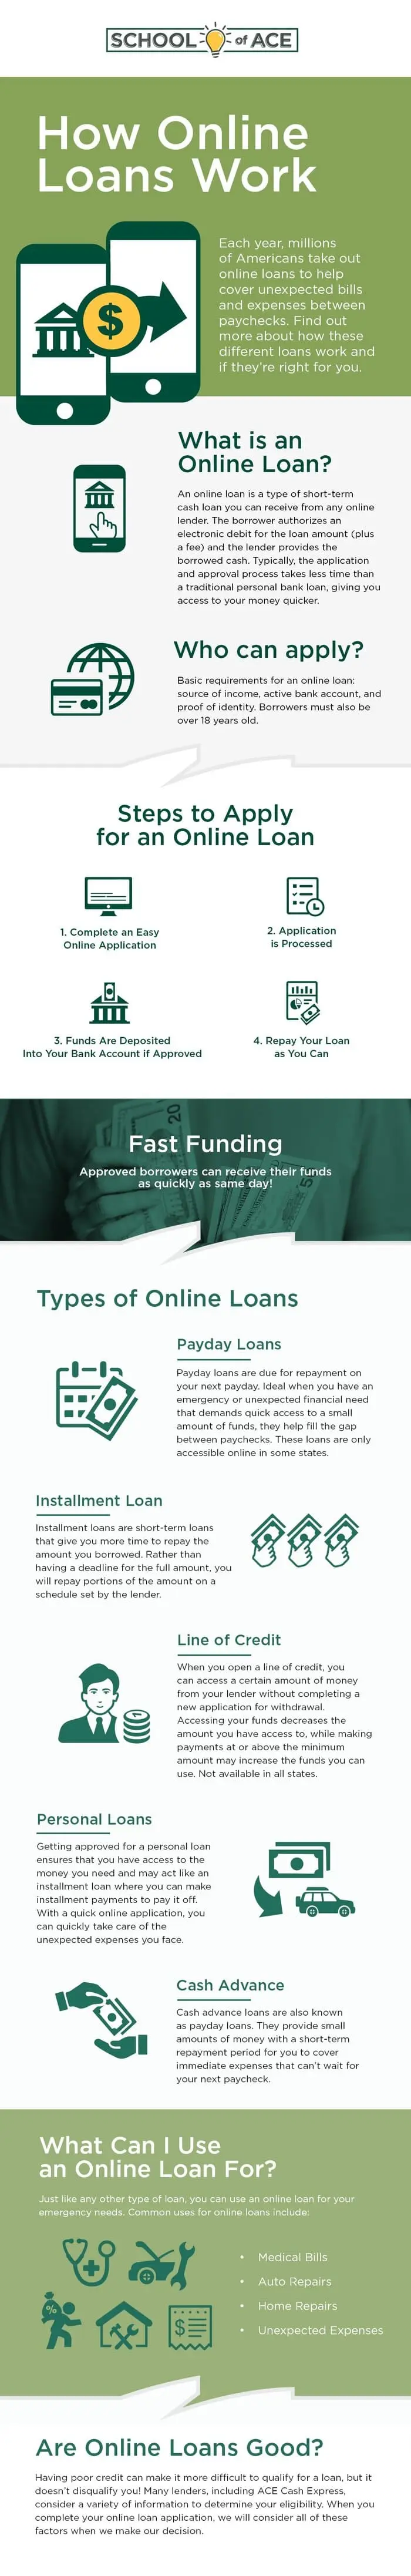 understanding online loans infographic